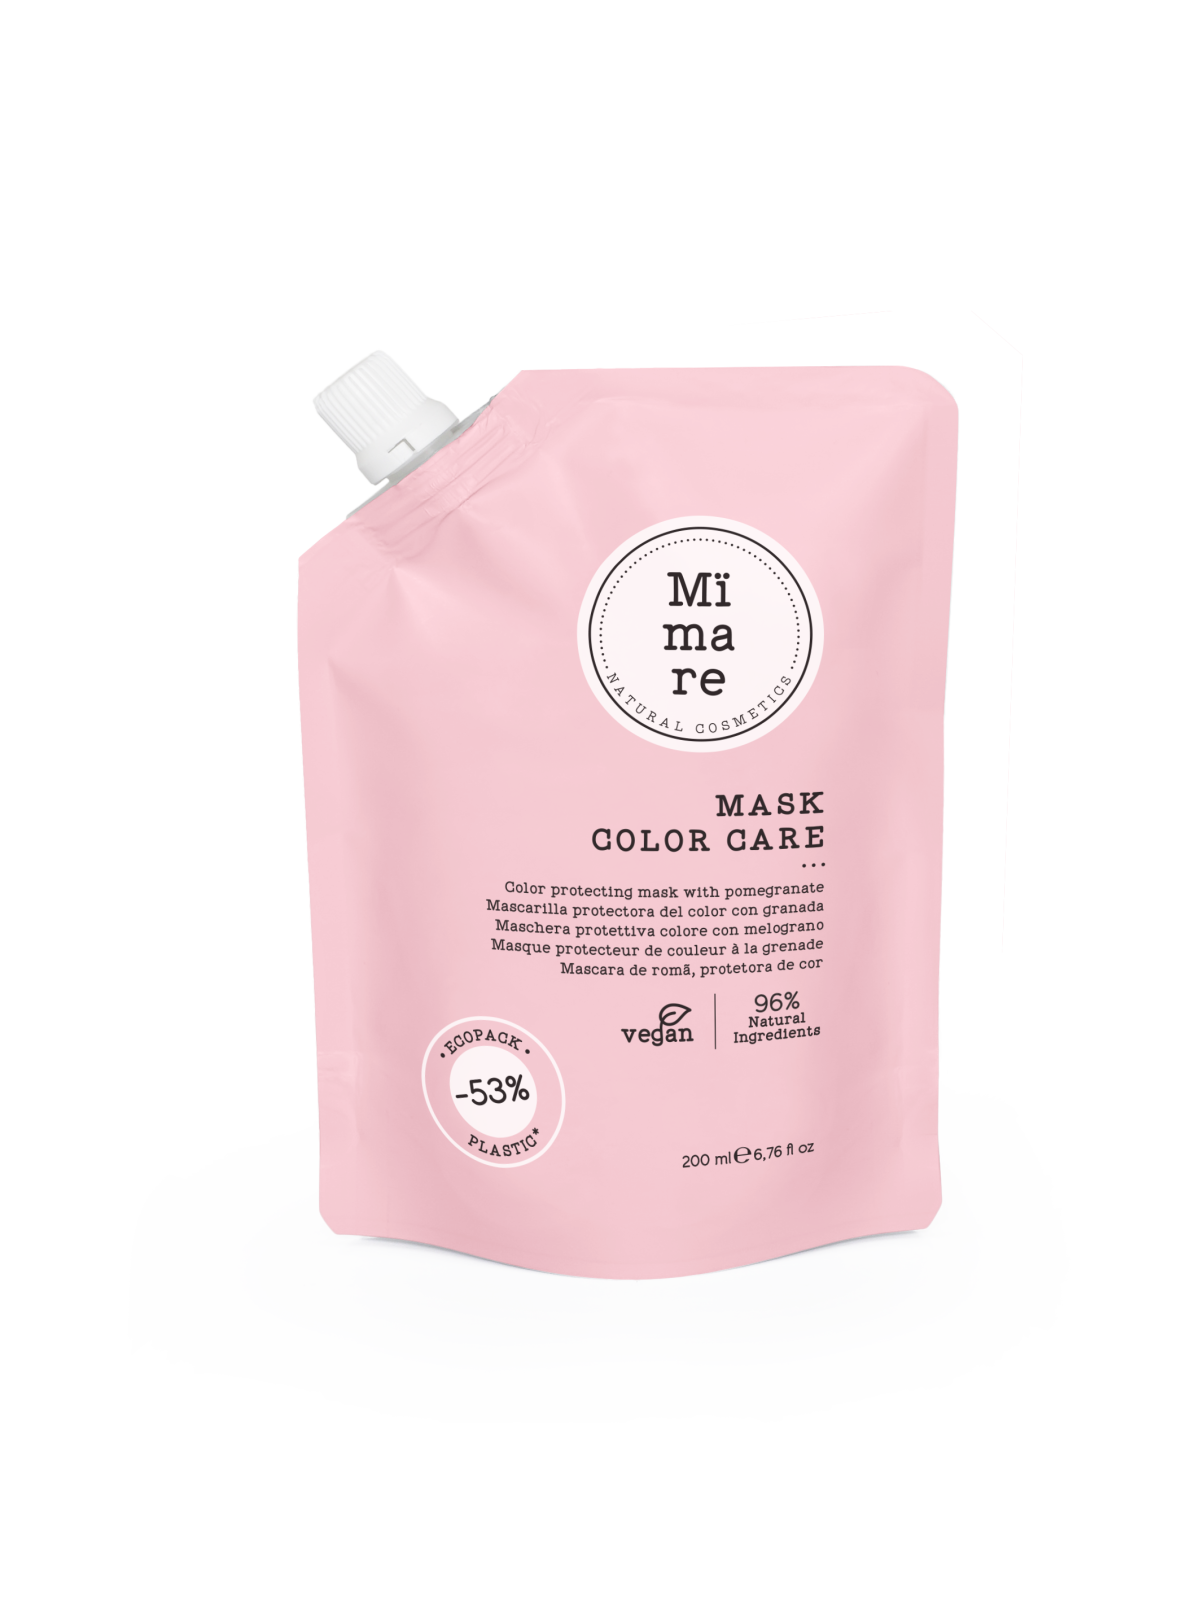 Comprar Mimare Mask Color Care 200ml en Inicio por sólo 7,15 € o un precio específico de 7,15 € en Thalie Care